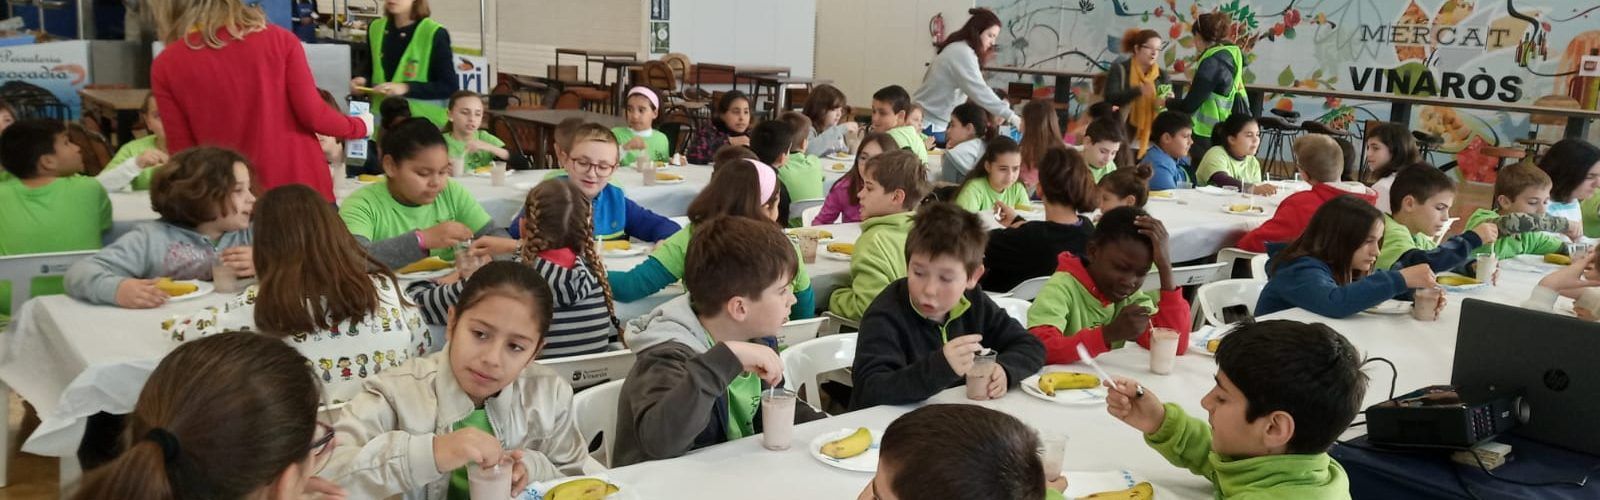 Els escolars de 4t esmorzen saludablement el mercat de Vinaròs